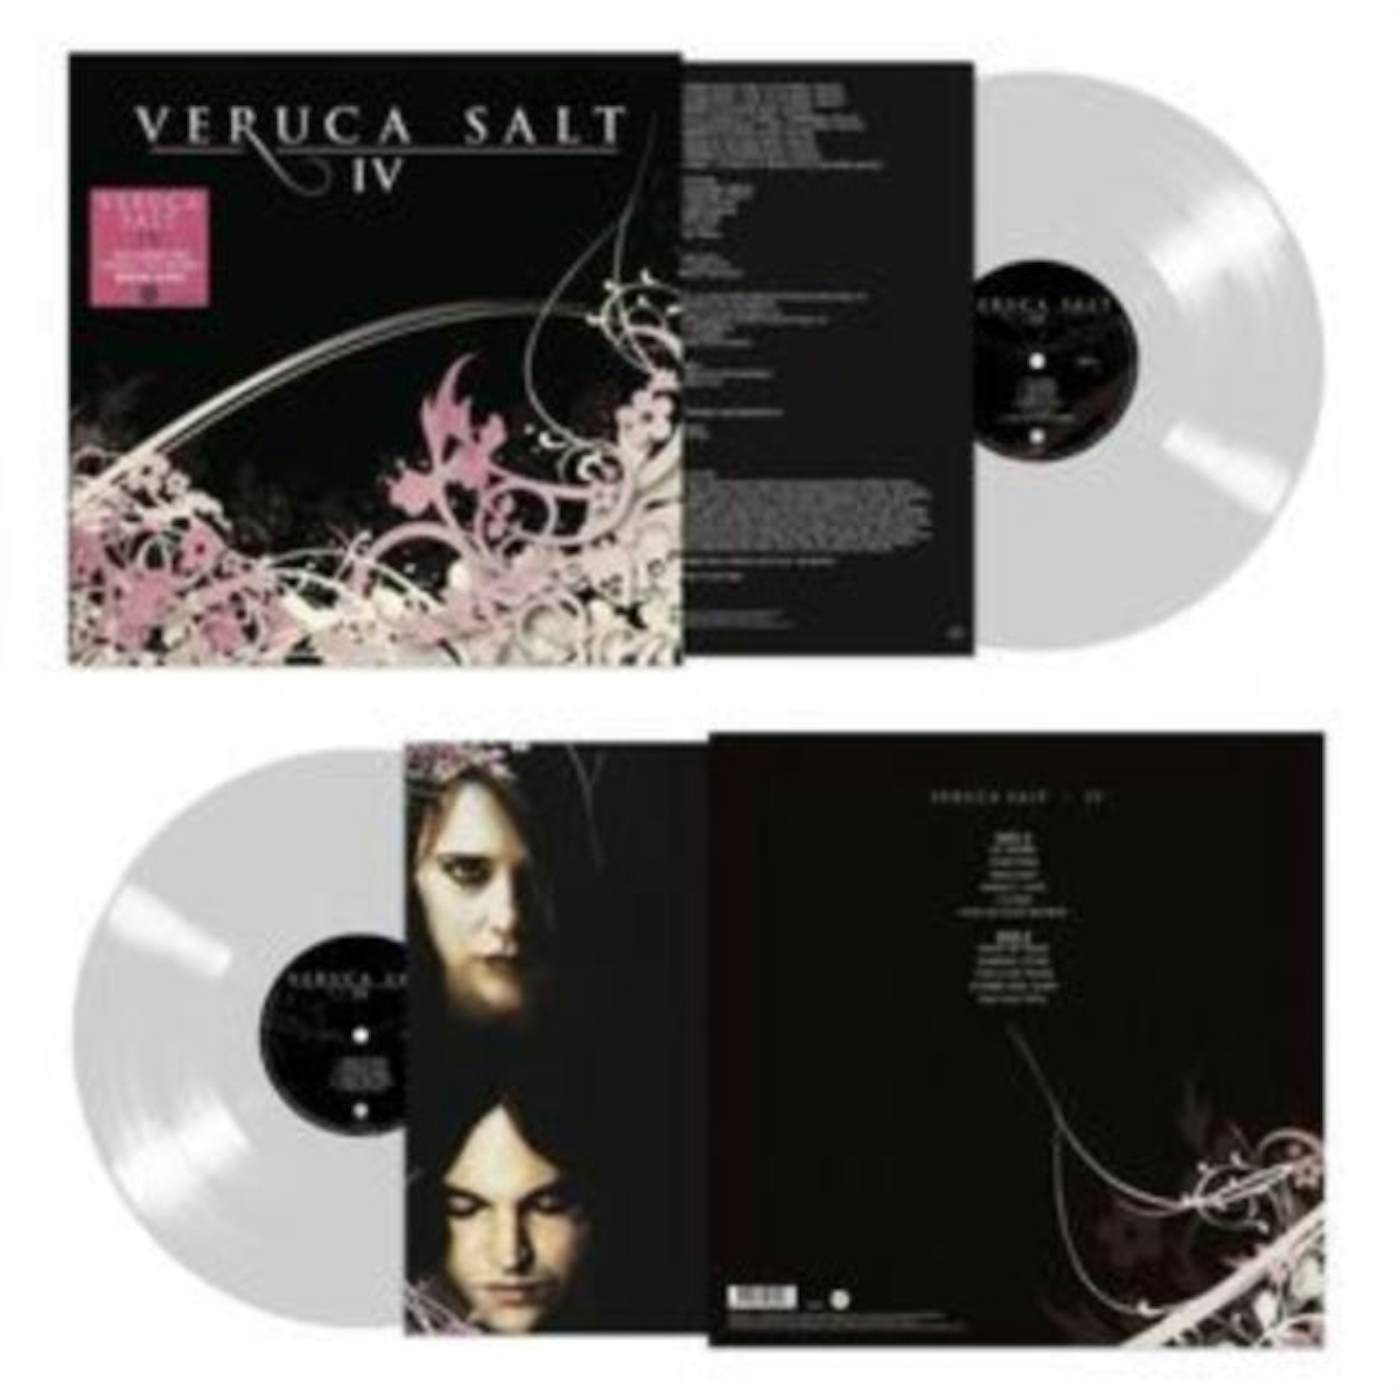 Veruca Salt LP Vinyl Record - IV (White Vinyl)